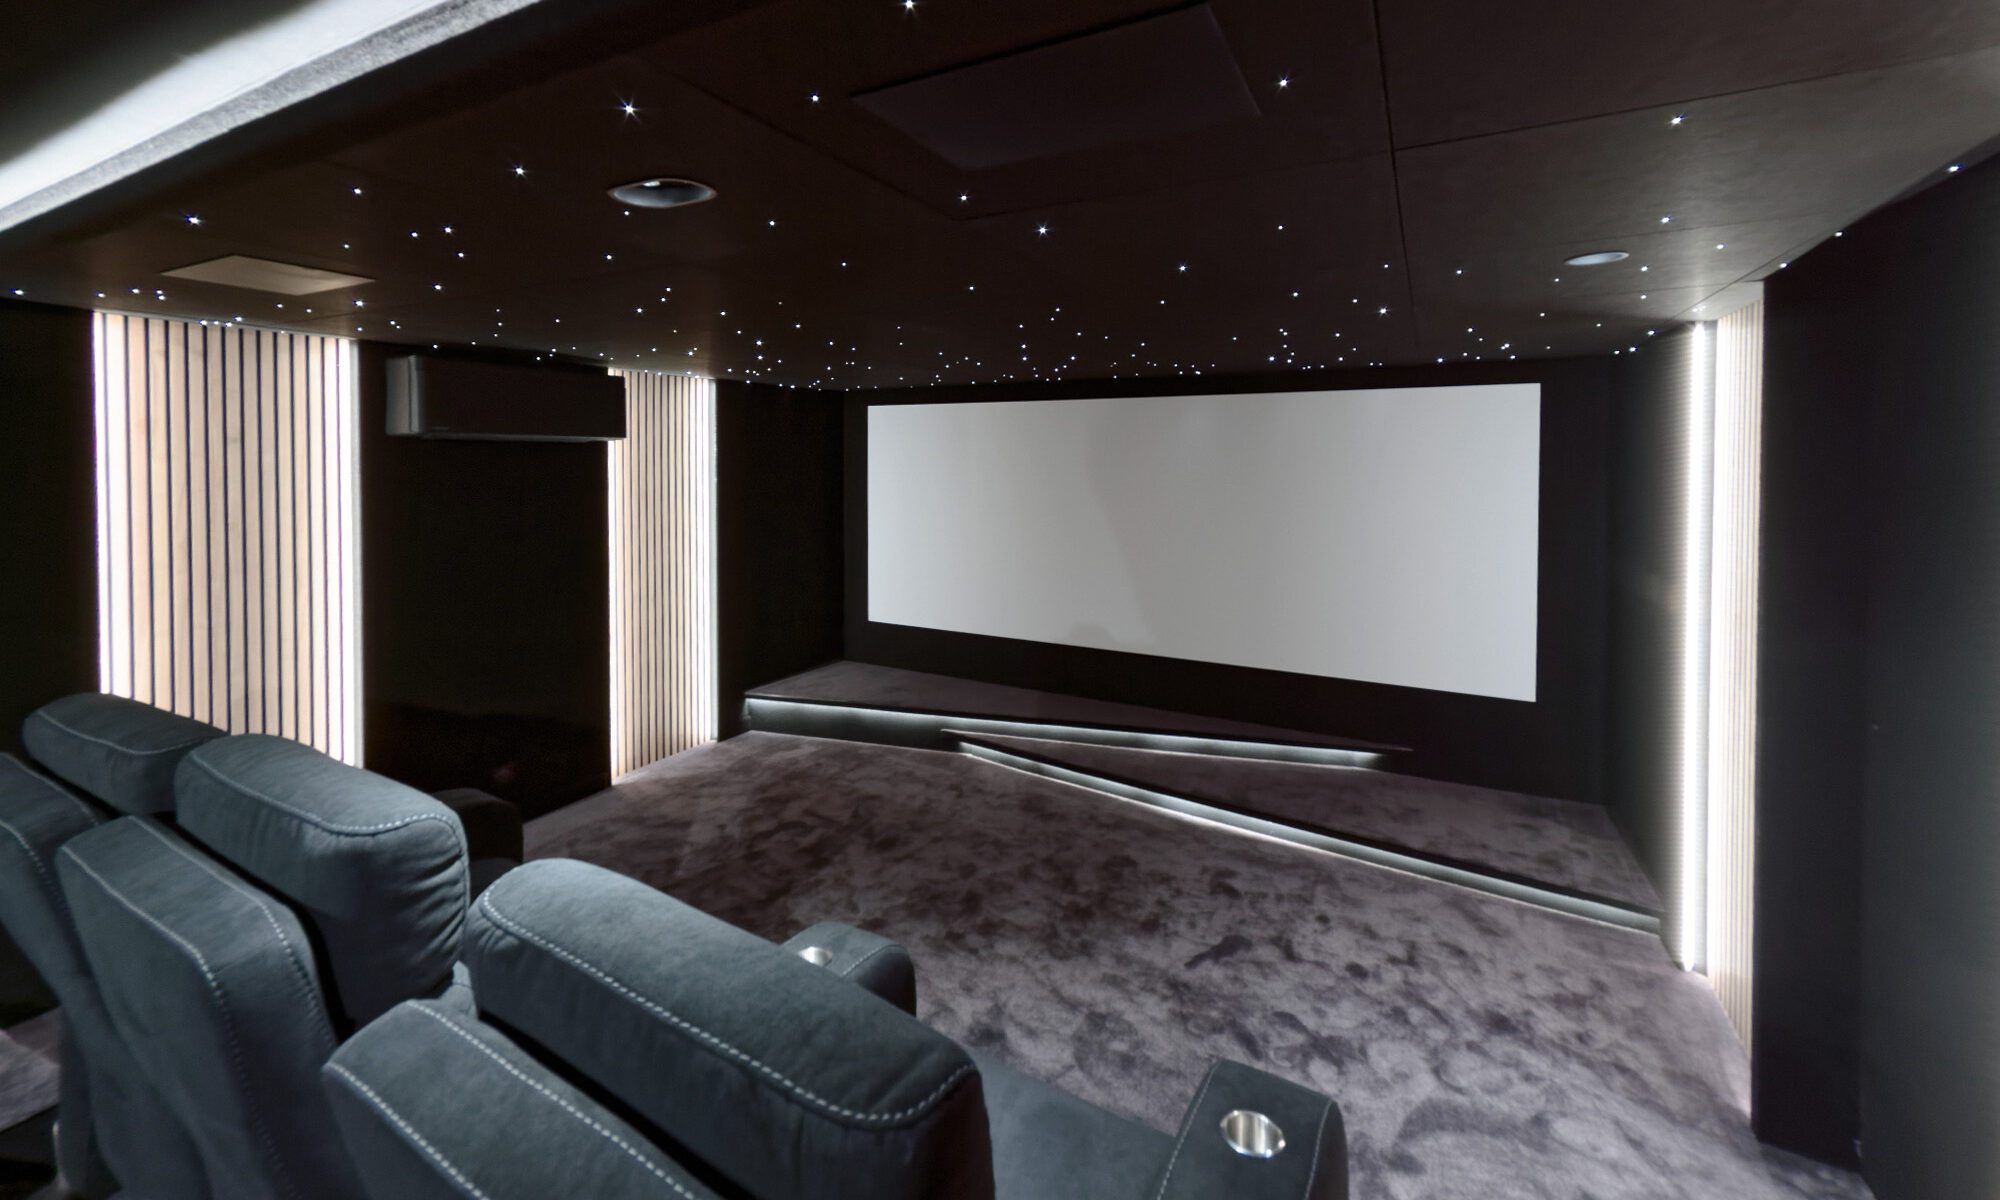 Salle de cinéma privée 22m2 avec 7 fauteuils en tissu en gris, ciel étoilé, spots, panneaux décor tasseaux de bois éclairés, moquette grise et double estrade à Rueil